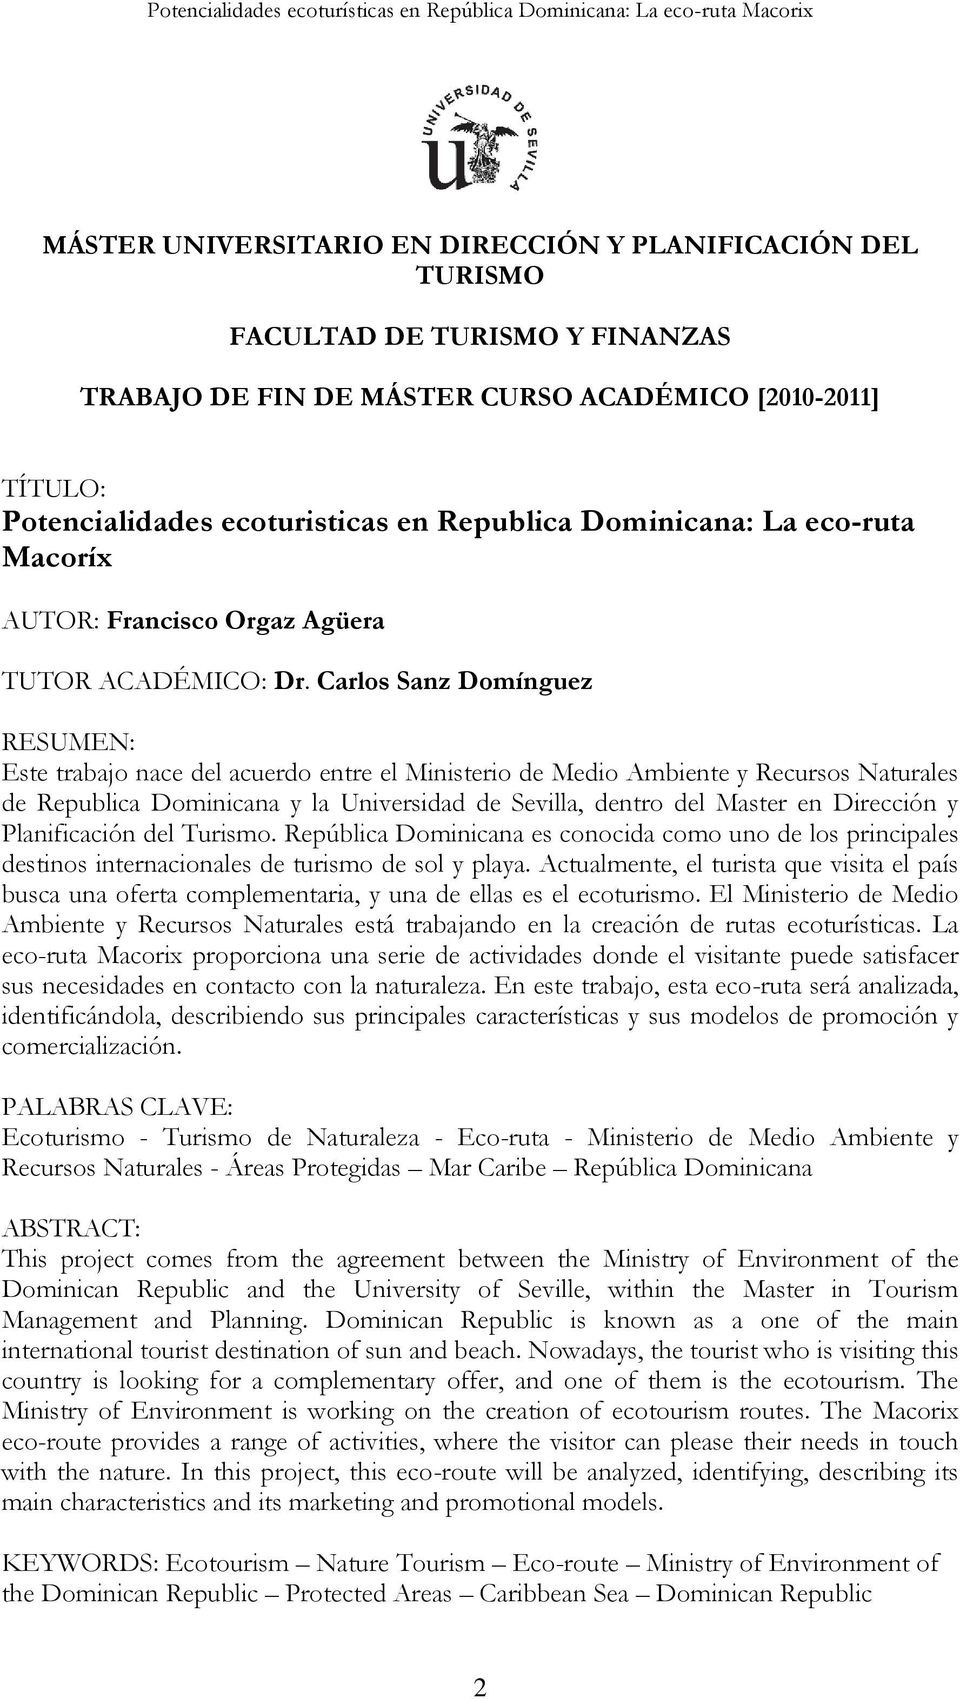 Carlos Sanz Domínguez RESUMEN: Este trabajo nace del acuerdo entre el Ministerio de Medio Ambiente y Recursos Naturales de Republica Dominicana y la Universidad de Sevilla, dentro del Master en